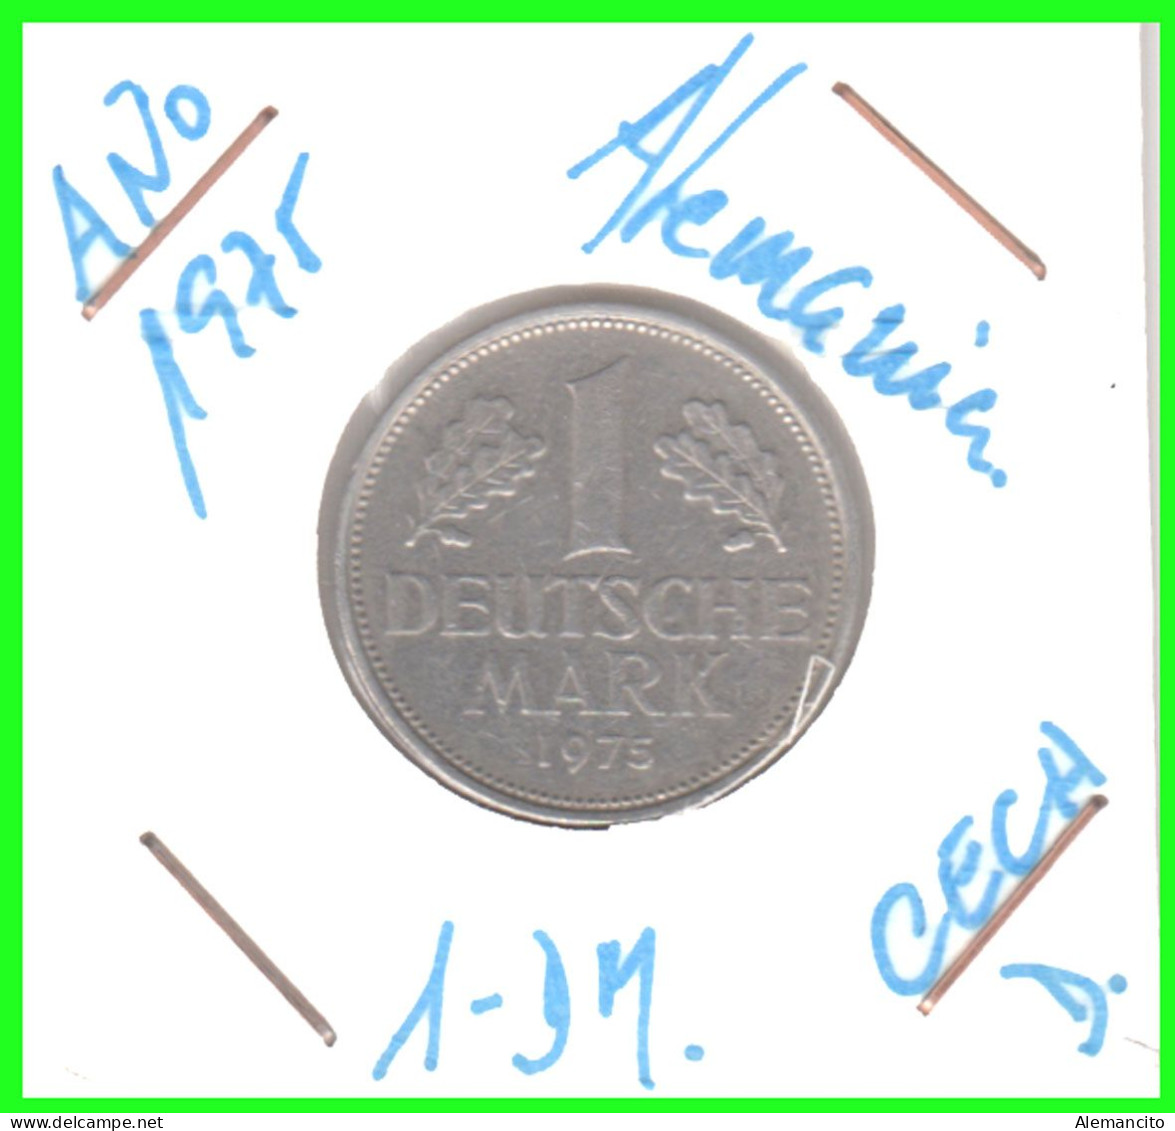 ALEMANIA FEDERAL - DEUTSCHLAND - GERMANY –  MONEDA DE LA REPUBLICA FEDERAL DE ALEMANIA DE 1.00 DM-DEL AÑO 1975 CECA-D - 1 Mark